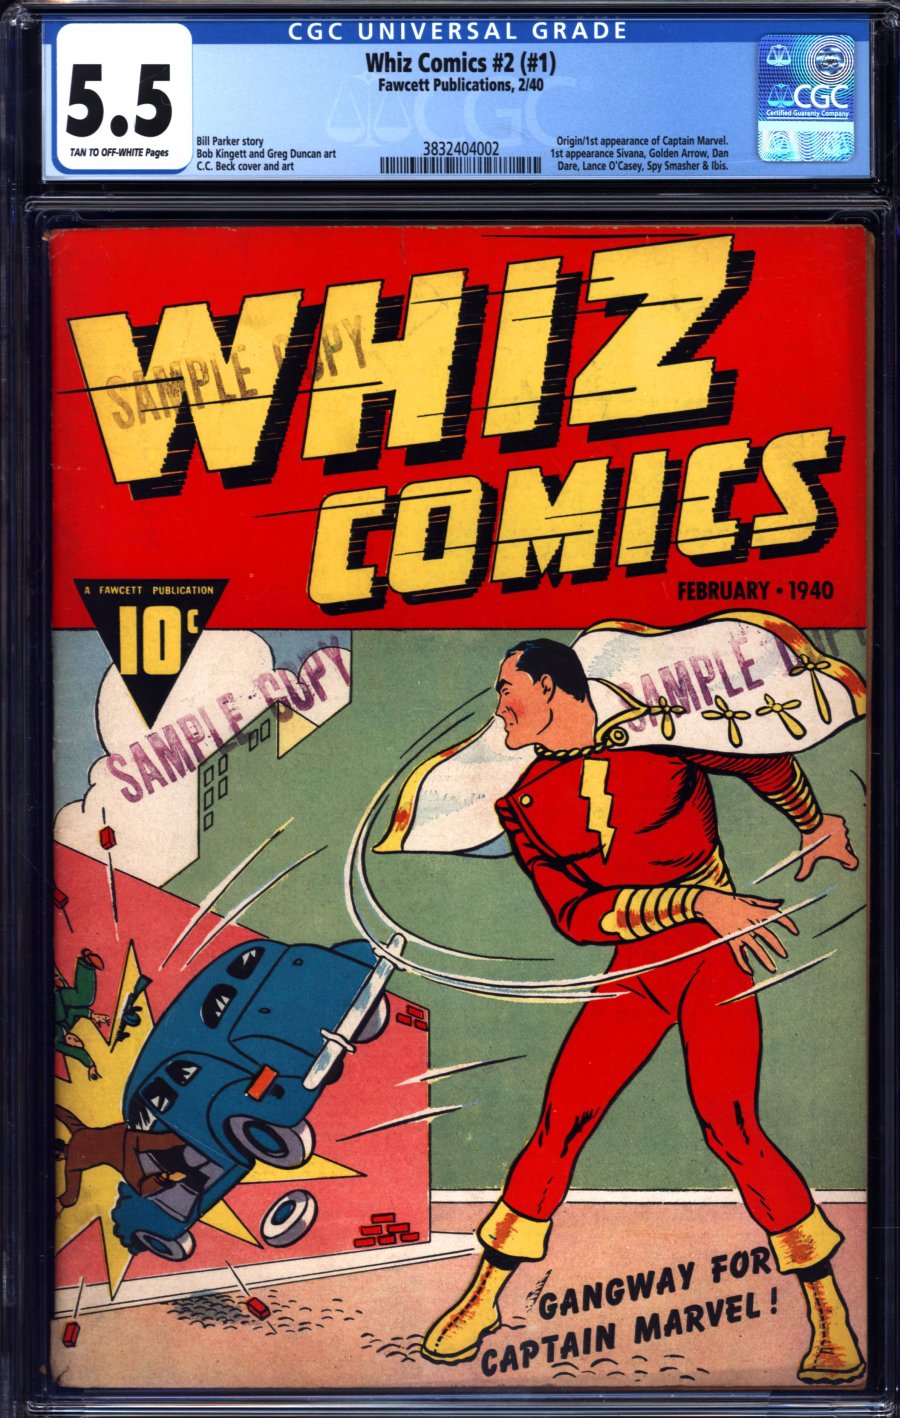 Whiz comics #1